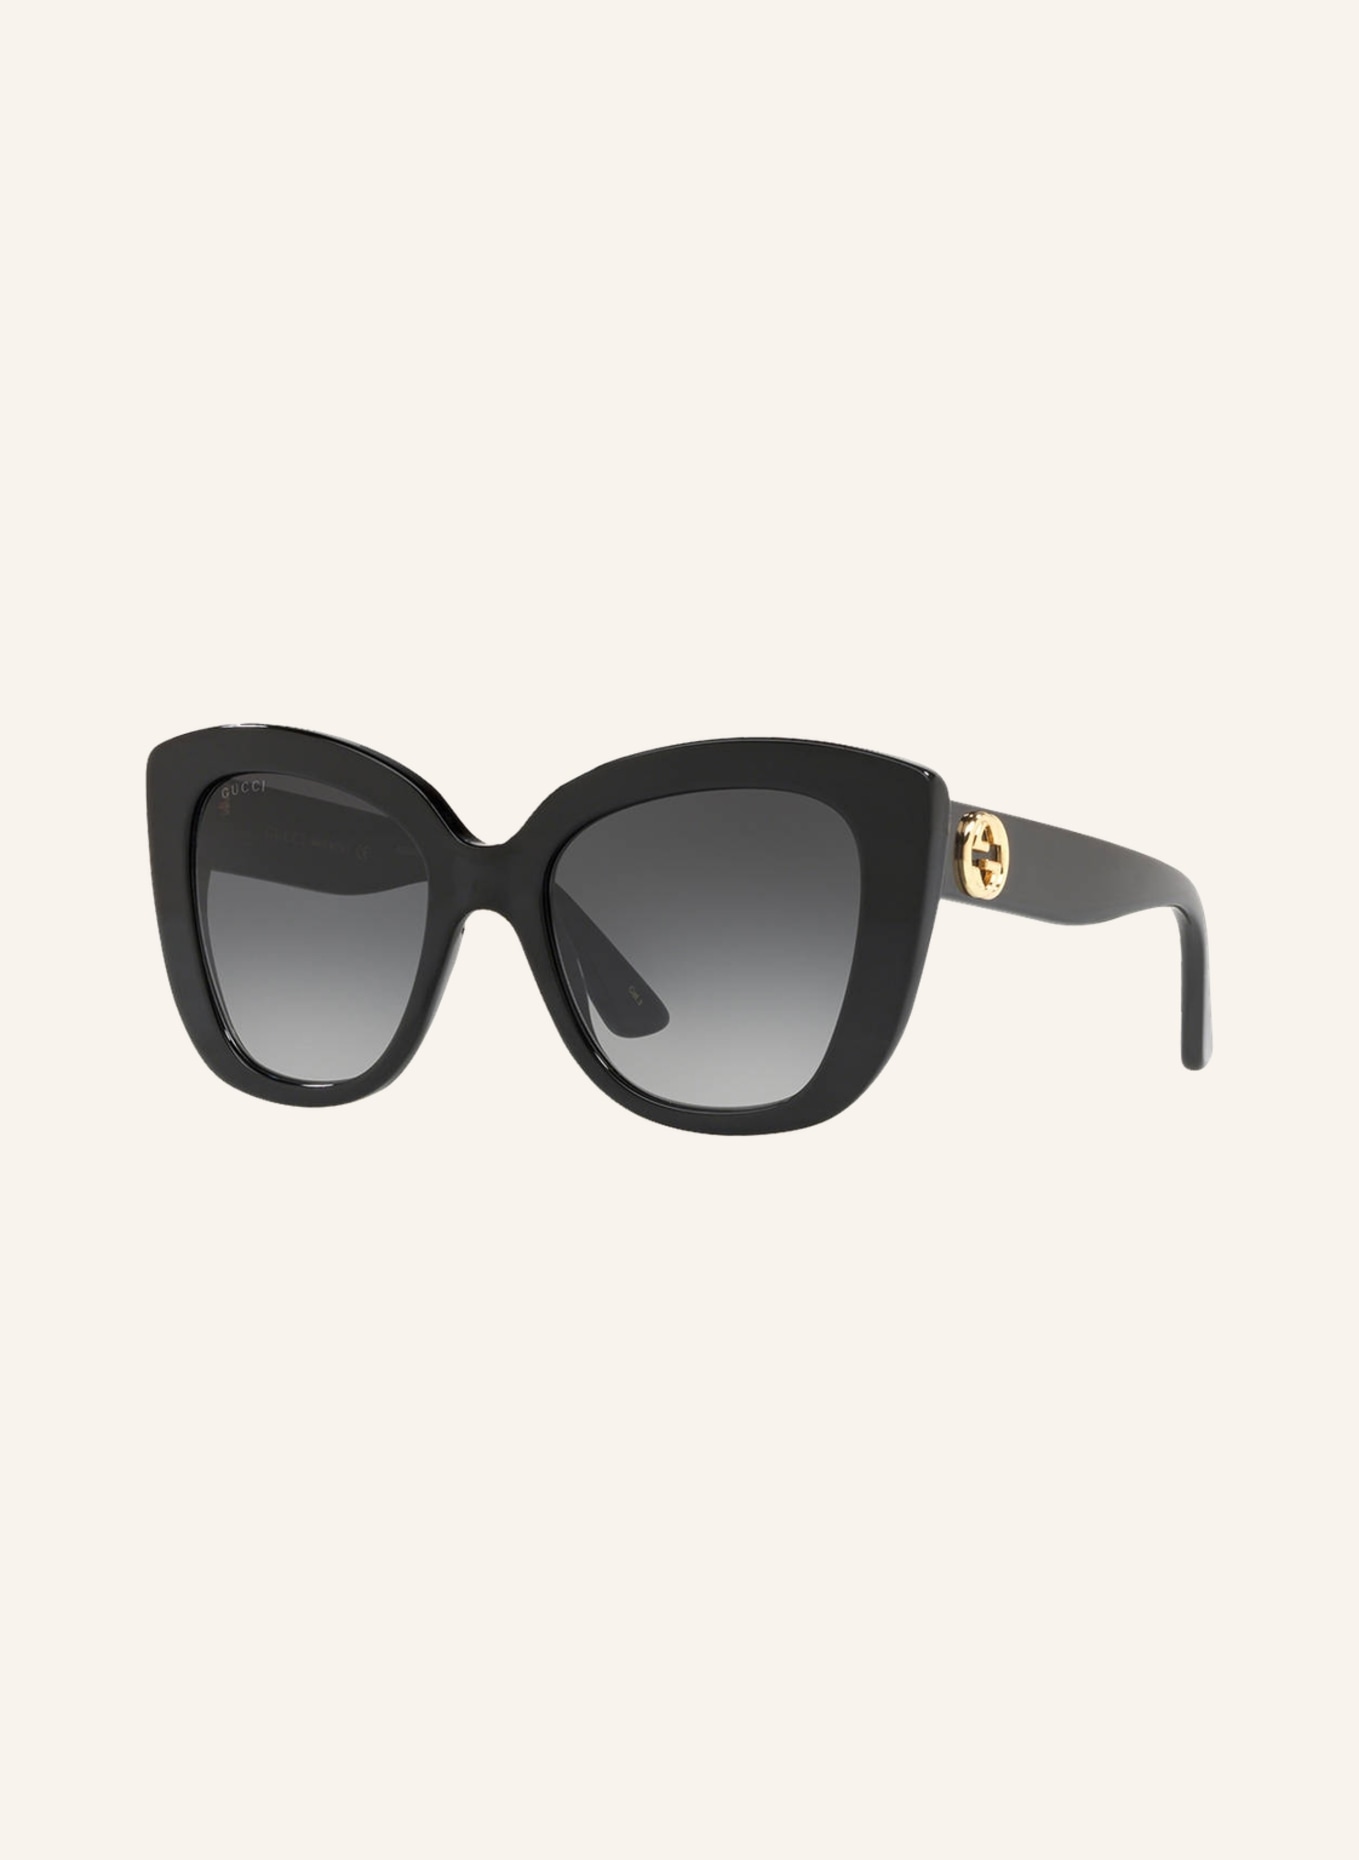 GUCCI Sunglasses GC001150, Color: 1330L3 - BLACK SHINY (Image 1)